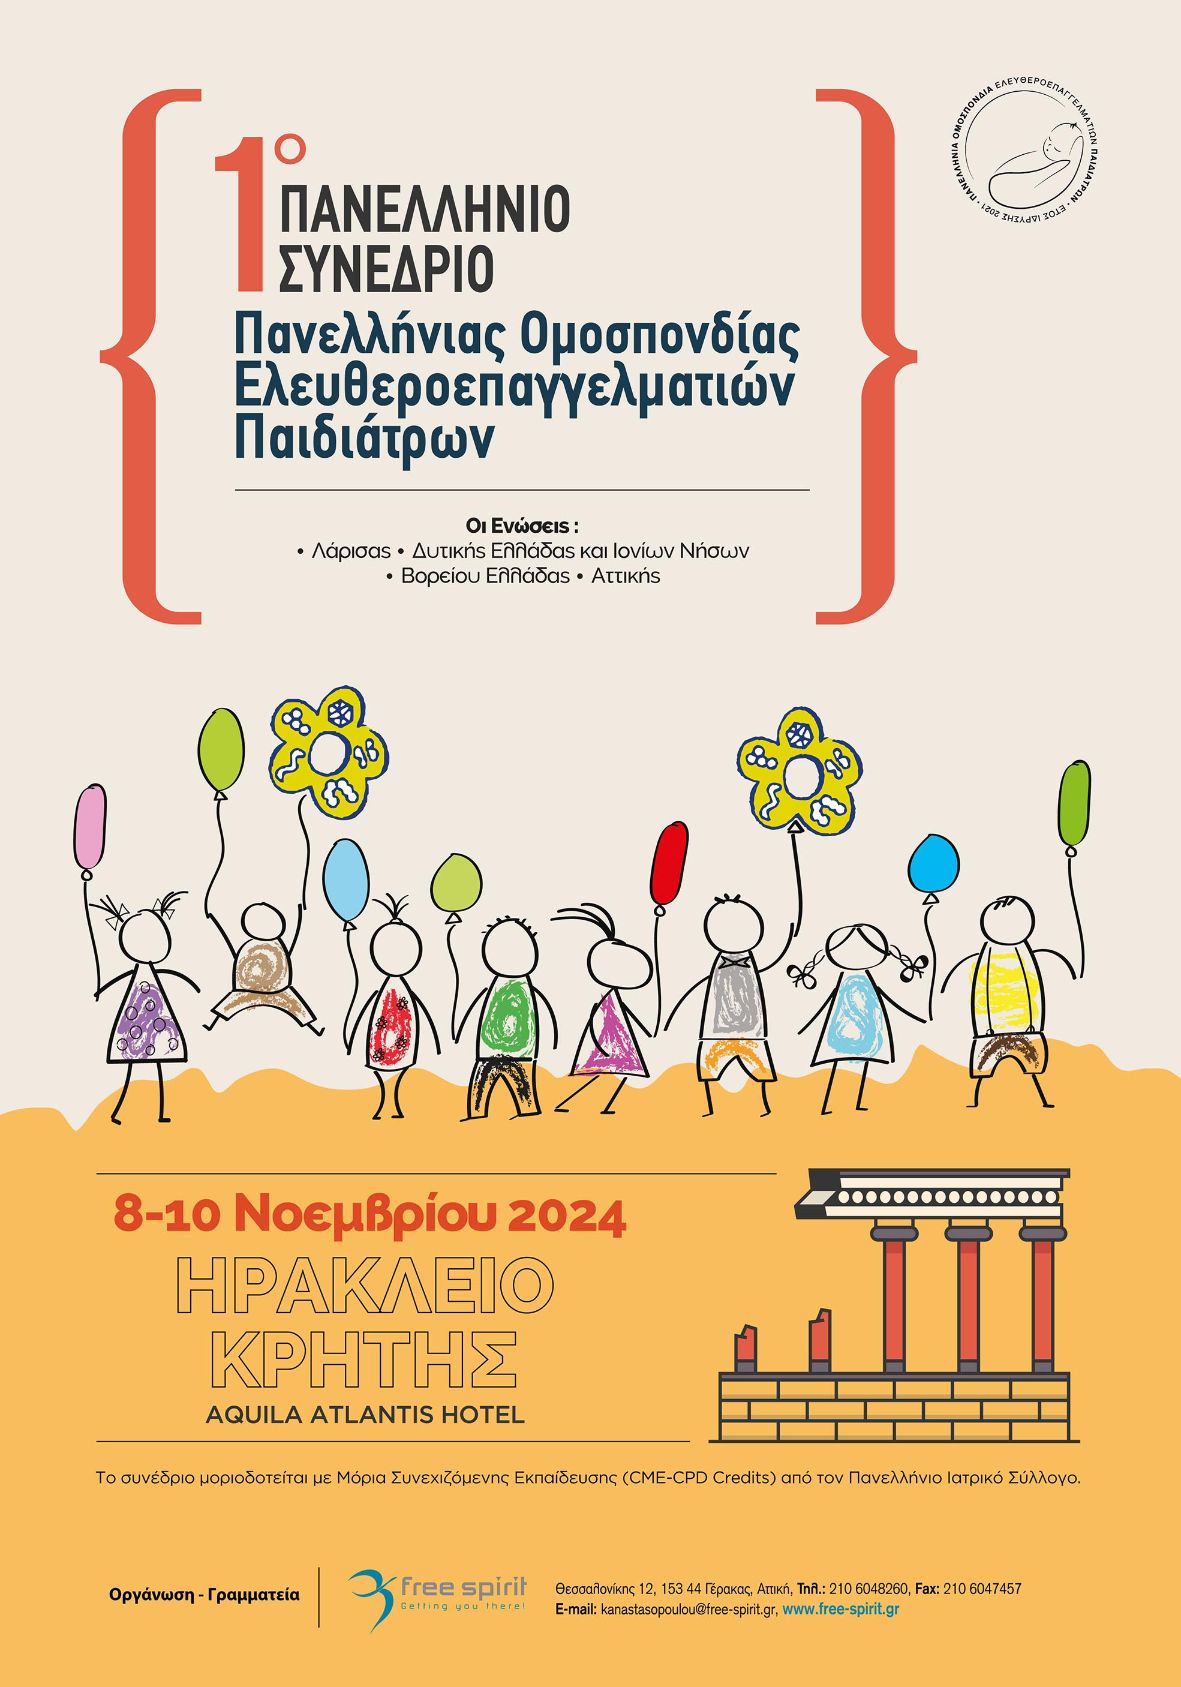 1ο Πανελλήνιο Συνέδριο Πανελλήνιας Ομοσπονδίας Ελευθεροεπαγγελματιών Παιδιάτρων